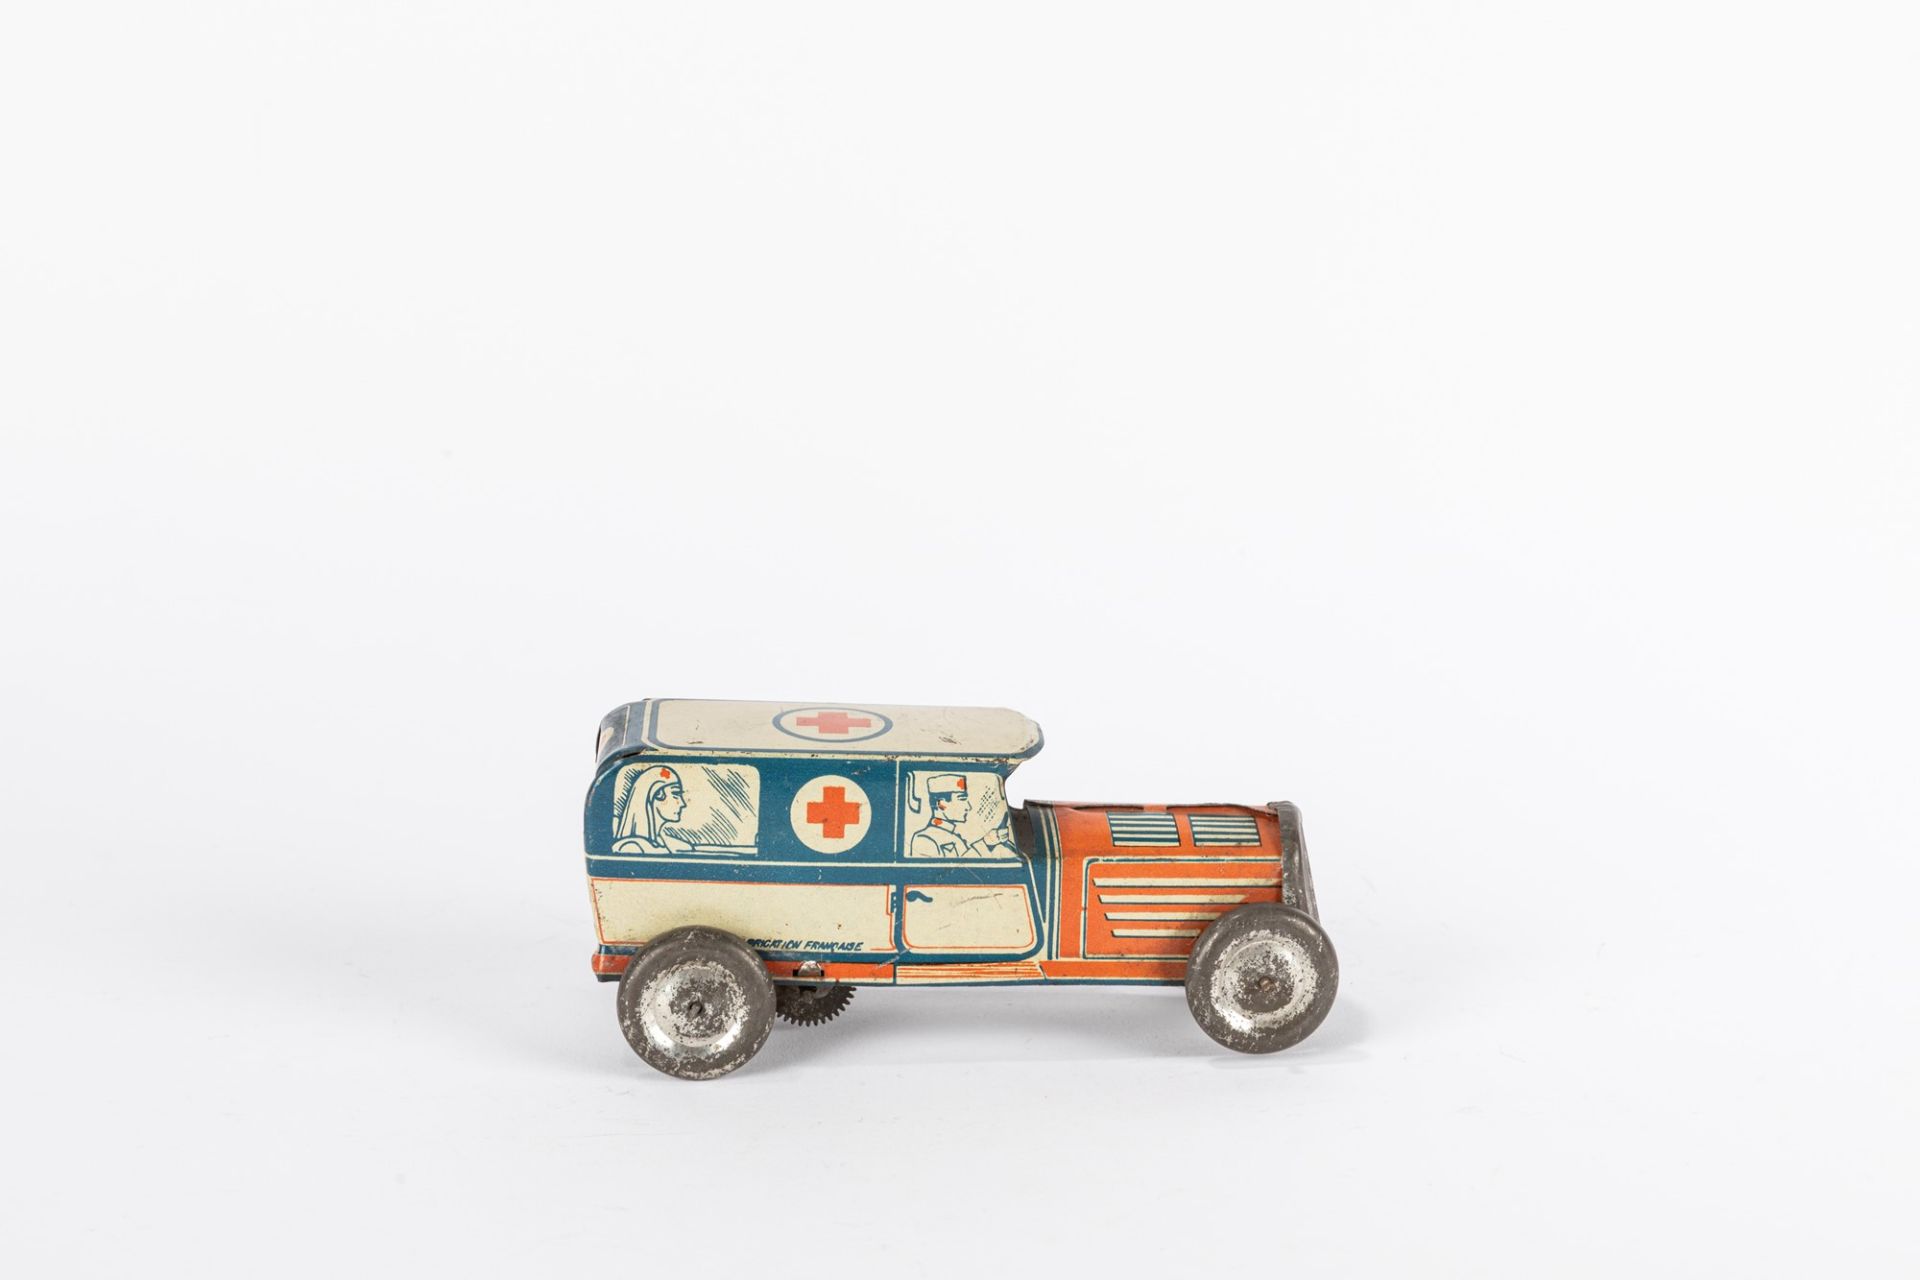 Memo - Red Cross 713 car, 40s - Image 2 of 2